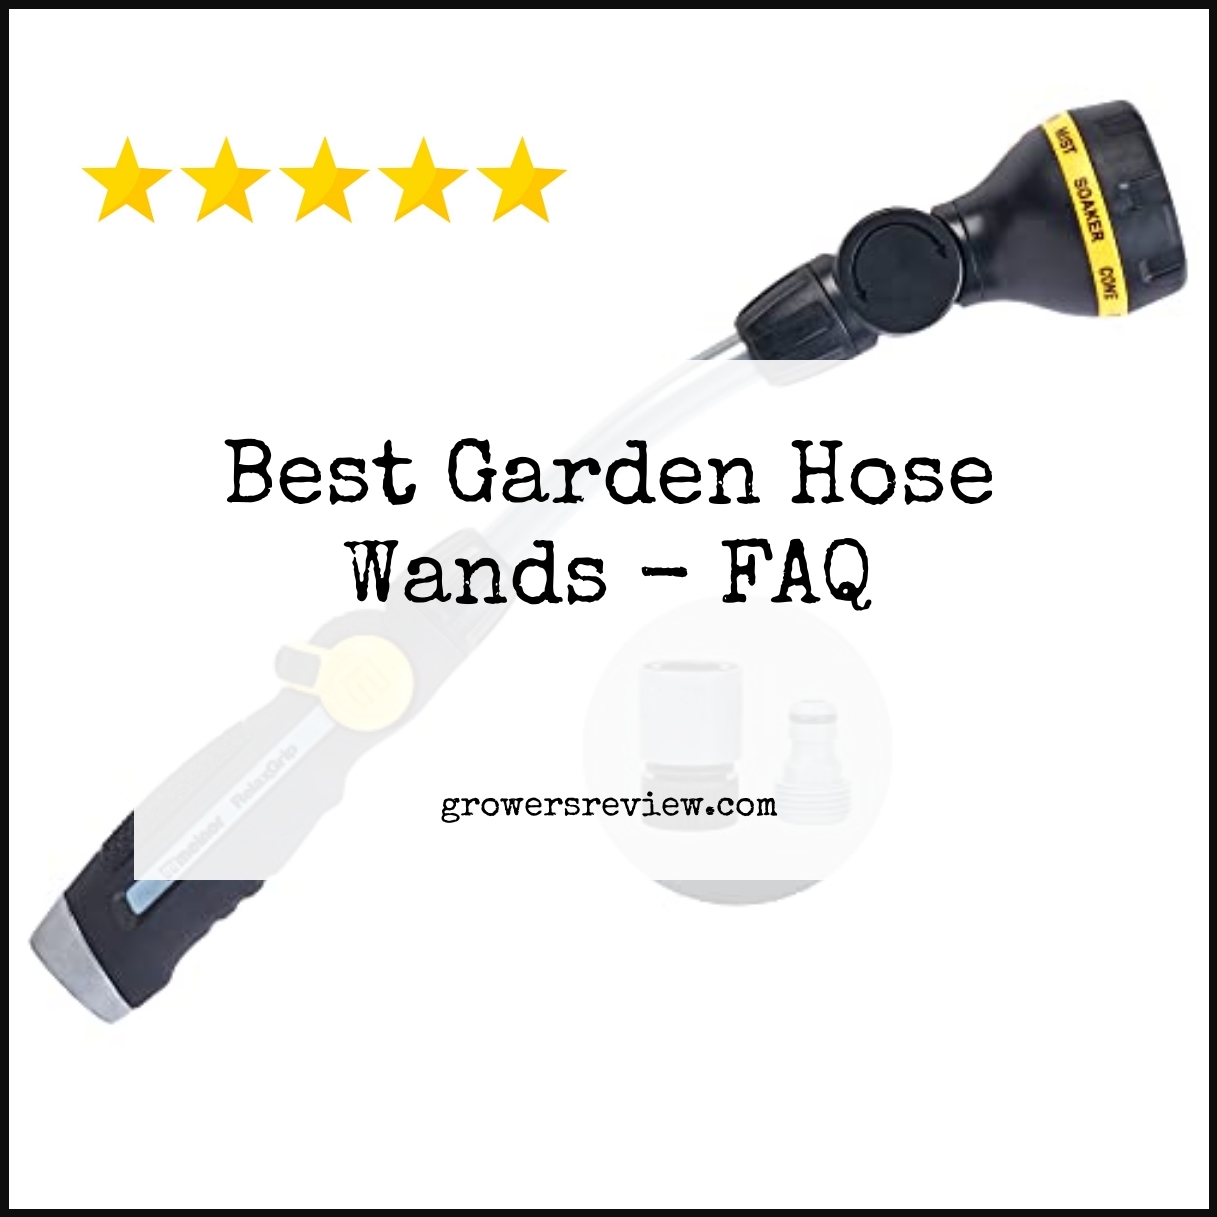 Best Garden Hose Wands - FAQ